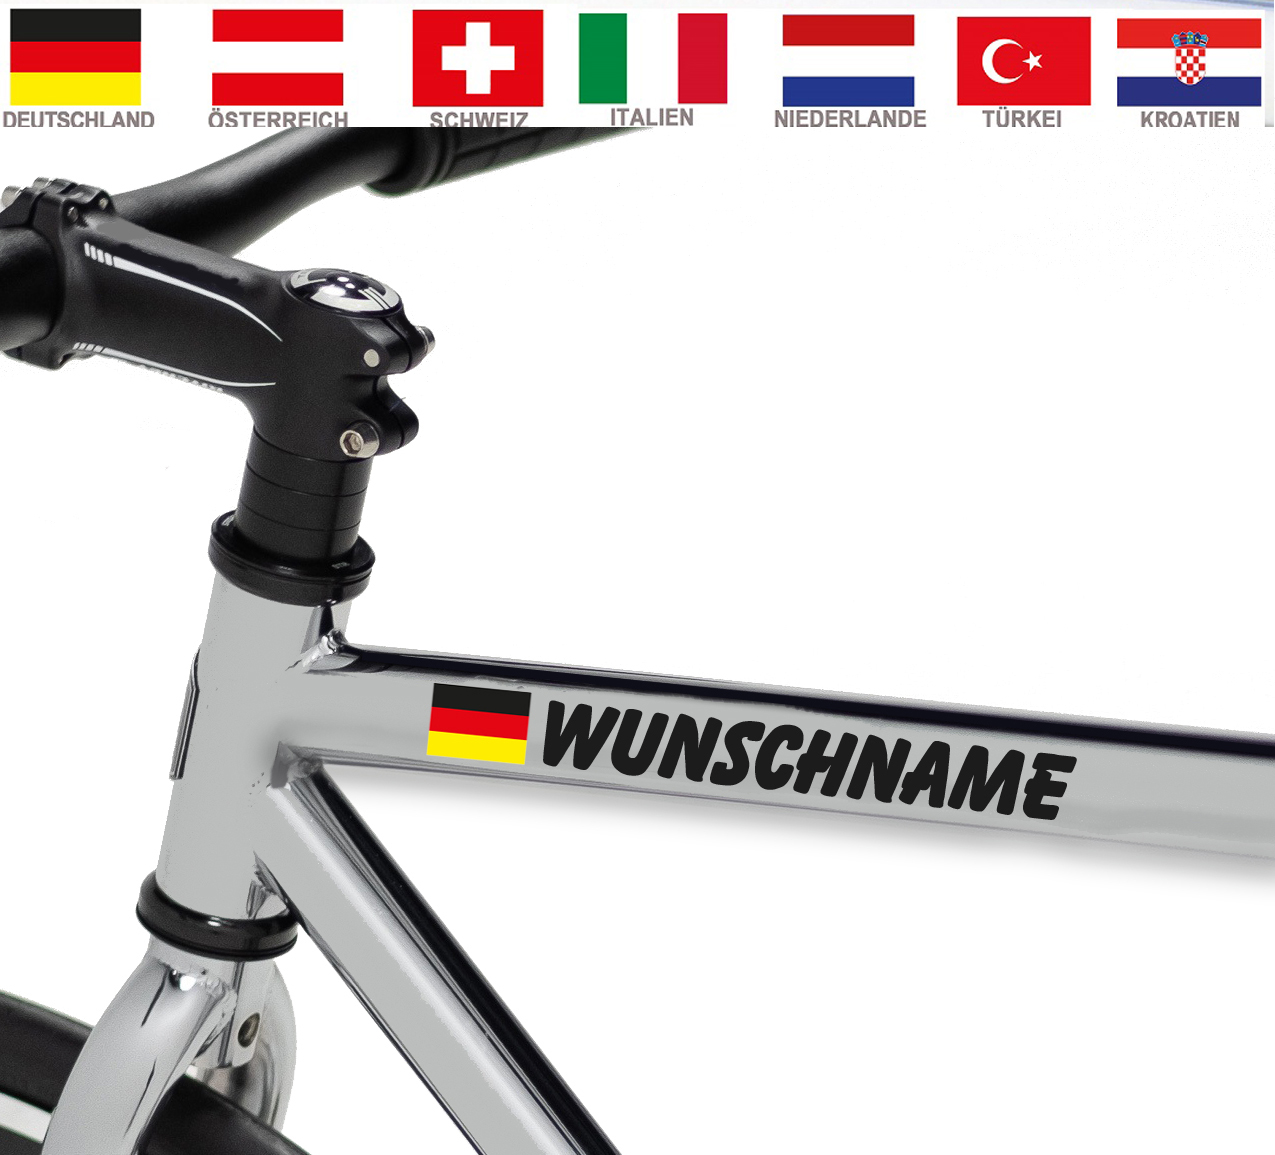 Flagge Deutschlands ●︎ HELM AUFKLEBER ●︎ Fahrrad Snowboard Reiten Sticker Name 